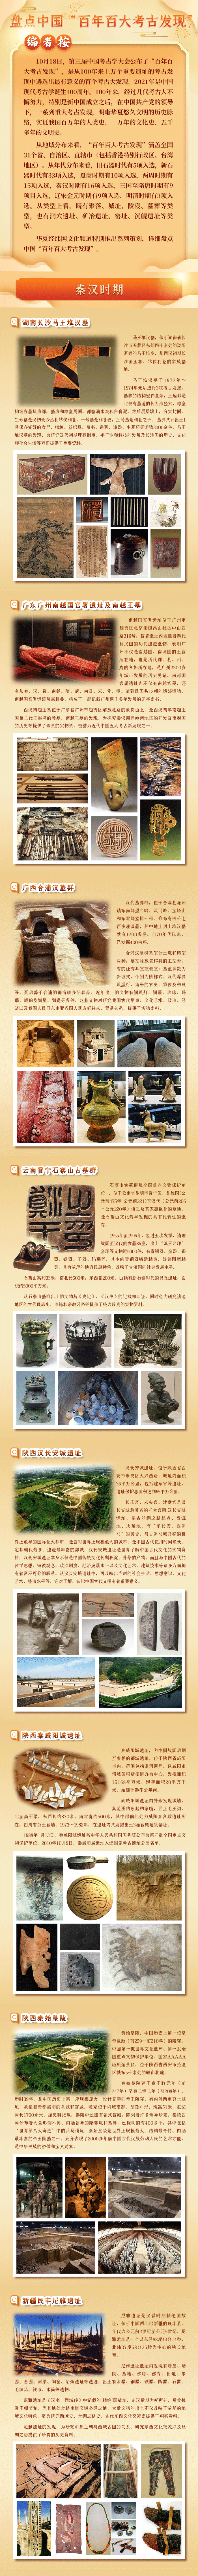 盘点“百年百大考古发现”——秦汉时期(下）